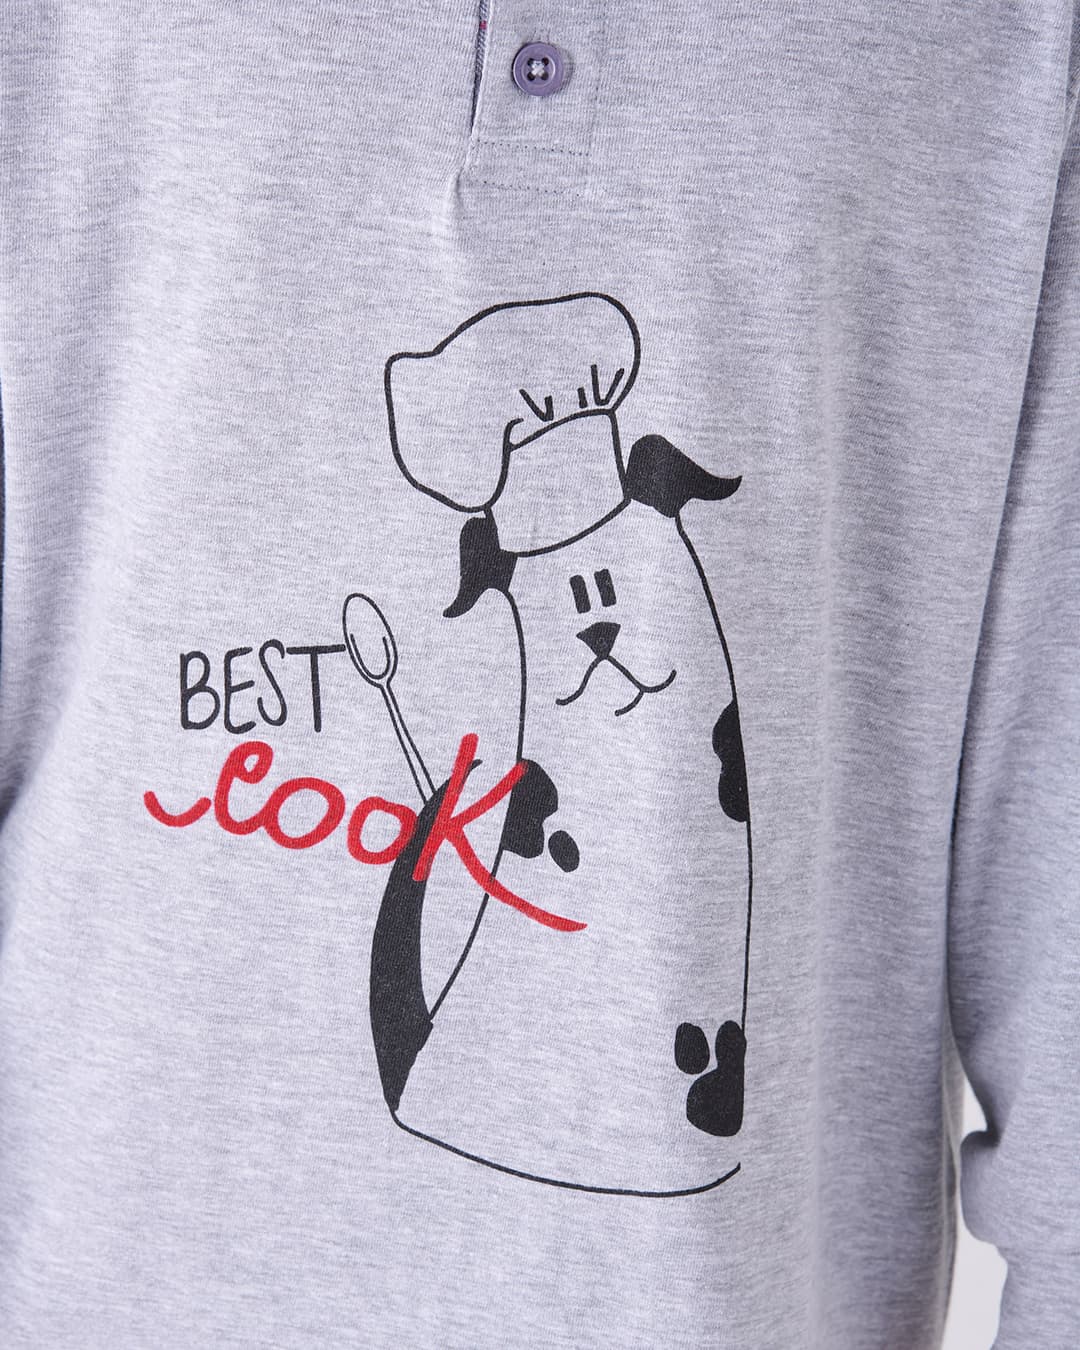 Dettaglio disegno sulla maglia del pigiama lungo da bimbo "COOK"